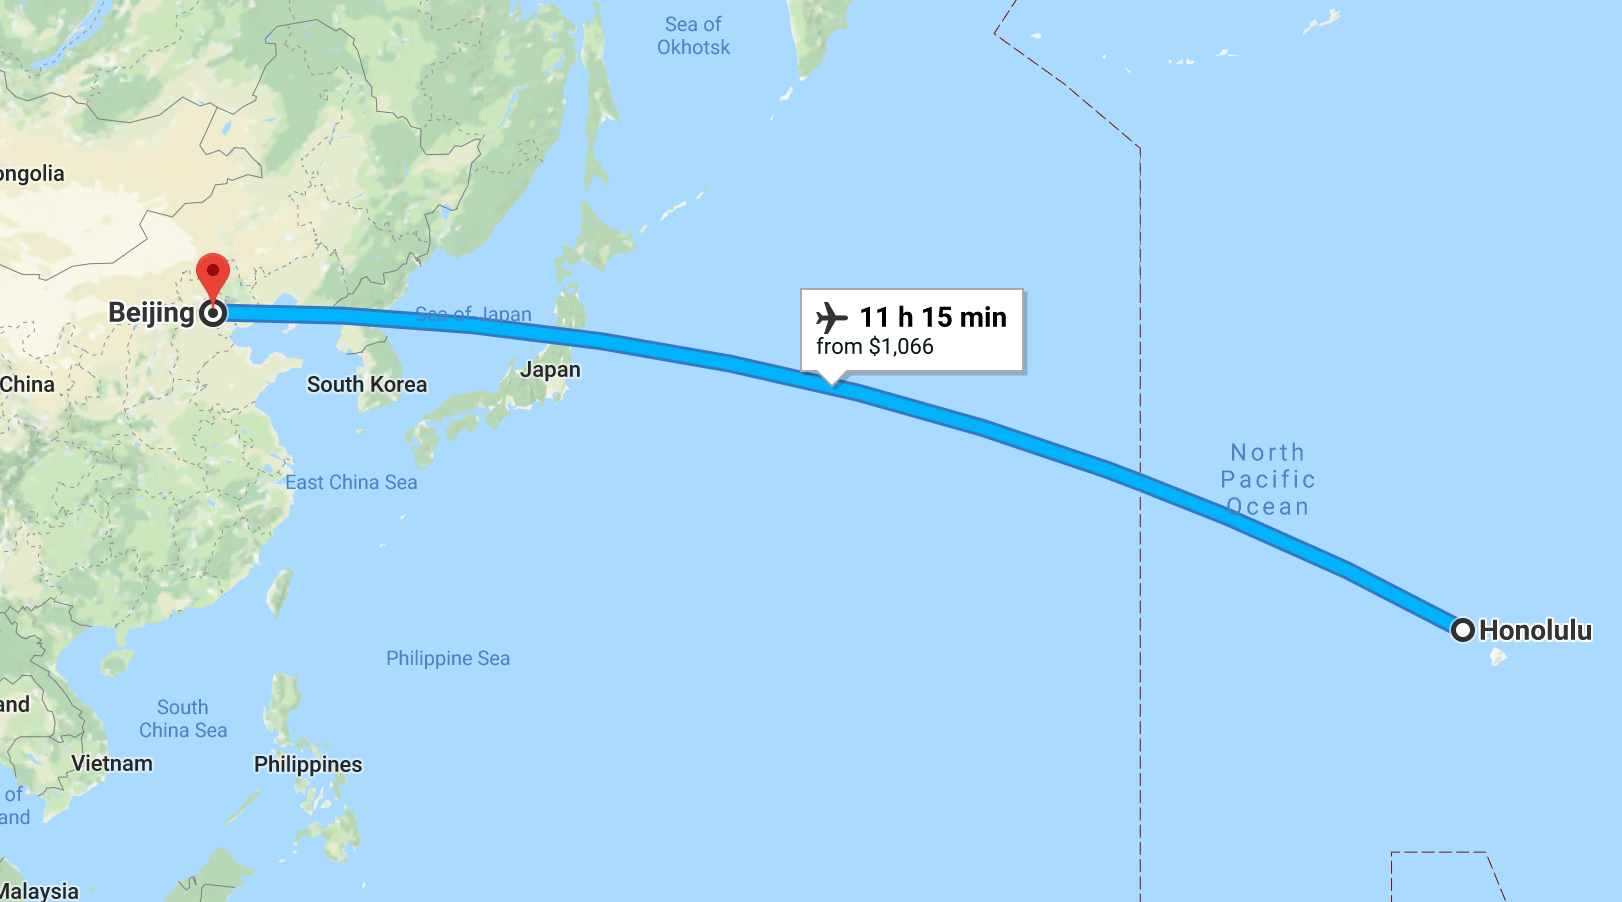 From Honolulu to Beijing